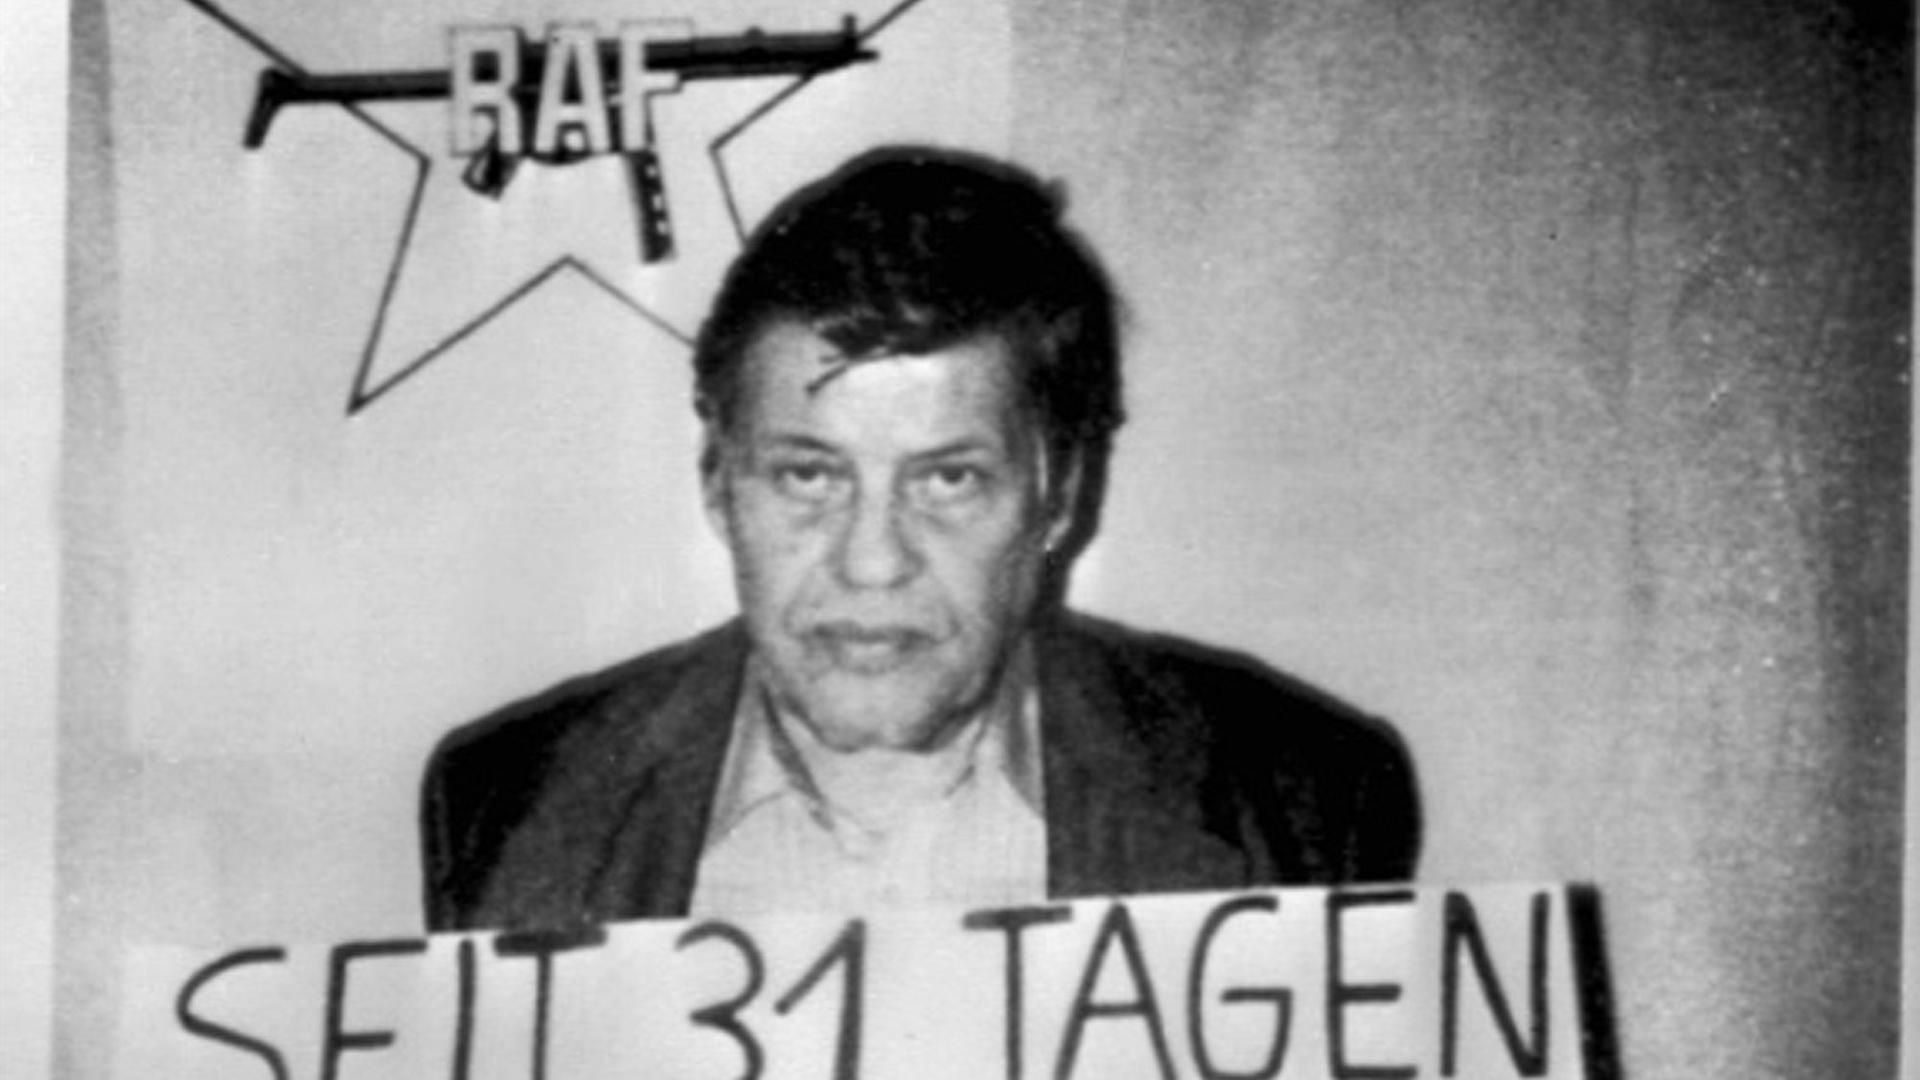 "Die Geschichte der RAF (4) Der deutsche Herbst - das Jahr 1977 ": Zeitungsbild von Hanns Martin Schleyer - Lebenszeichen 31 Tagen nach seiner Entführung 1977.